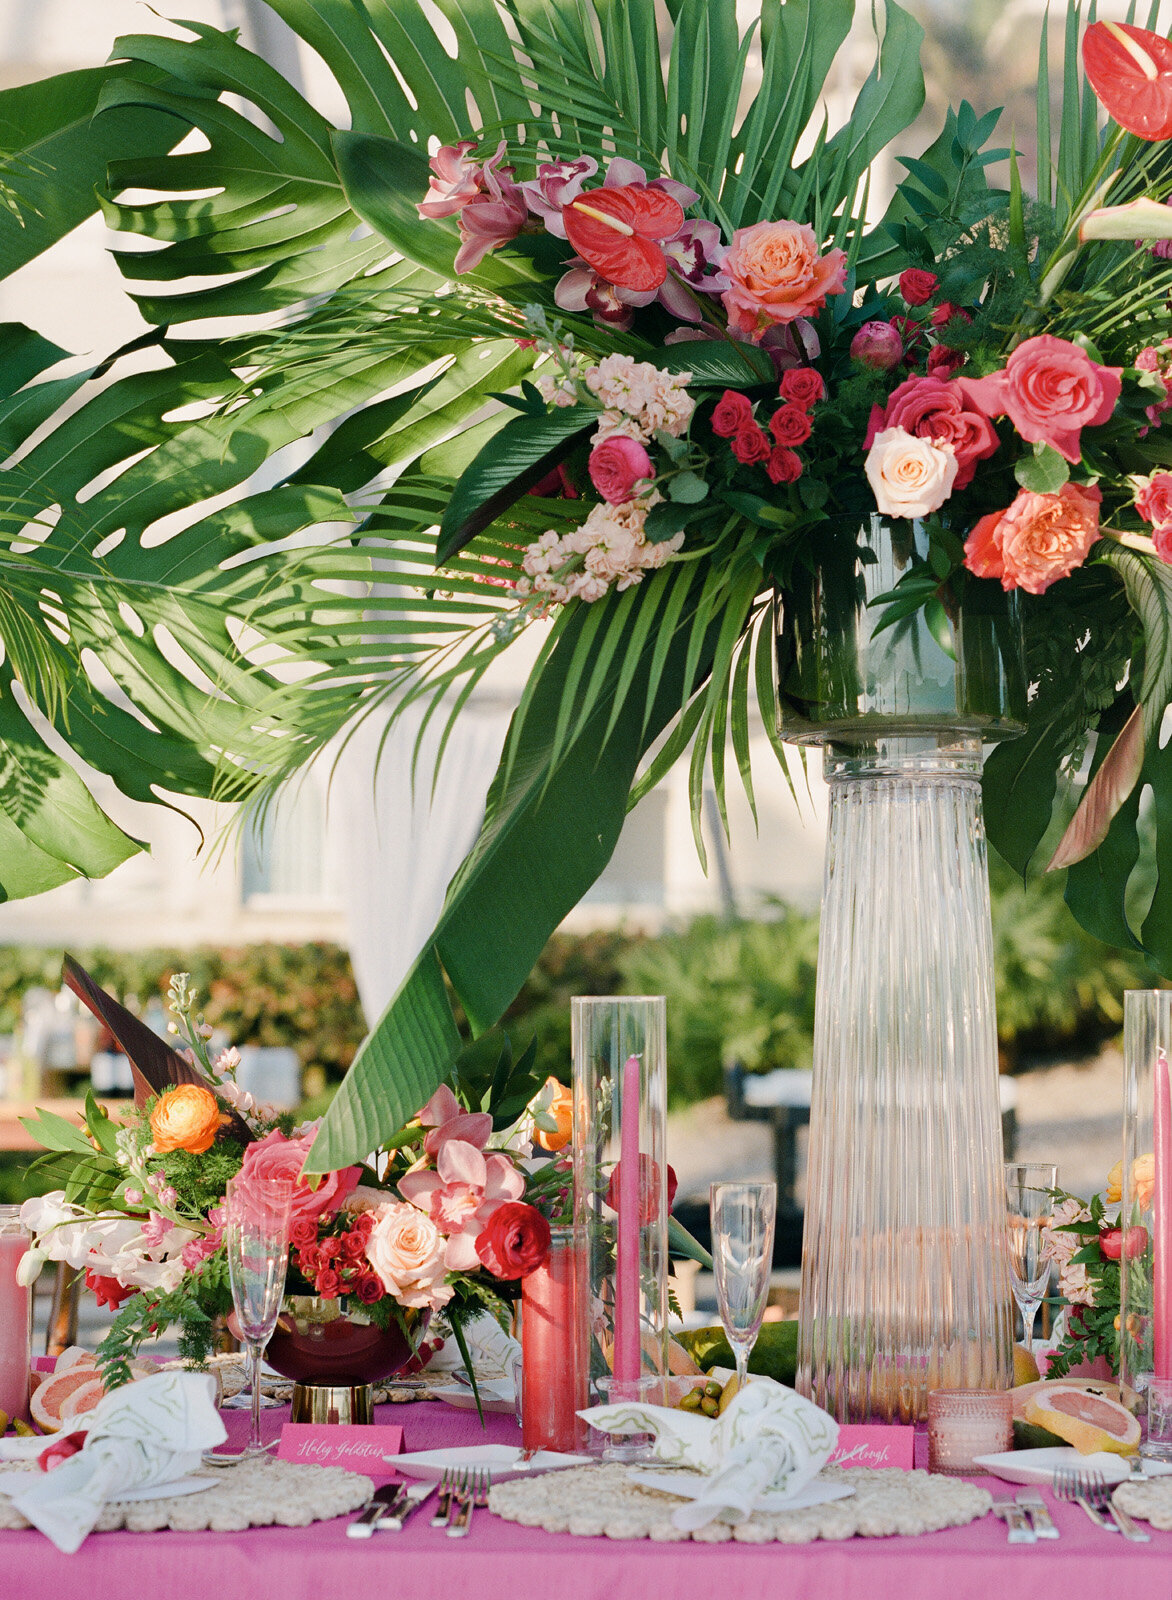 Kate-Murtaugh-Events-destination-wedding-planner-monstera-leaf-centerpiece-florals